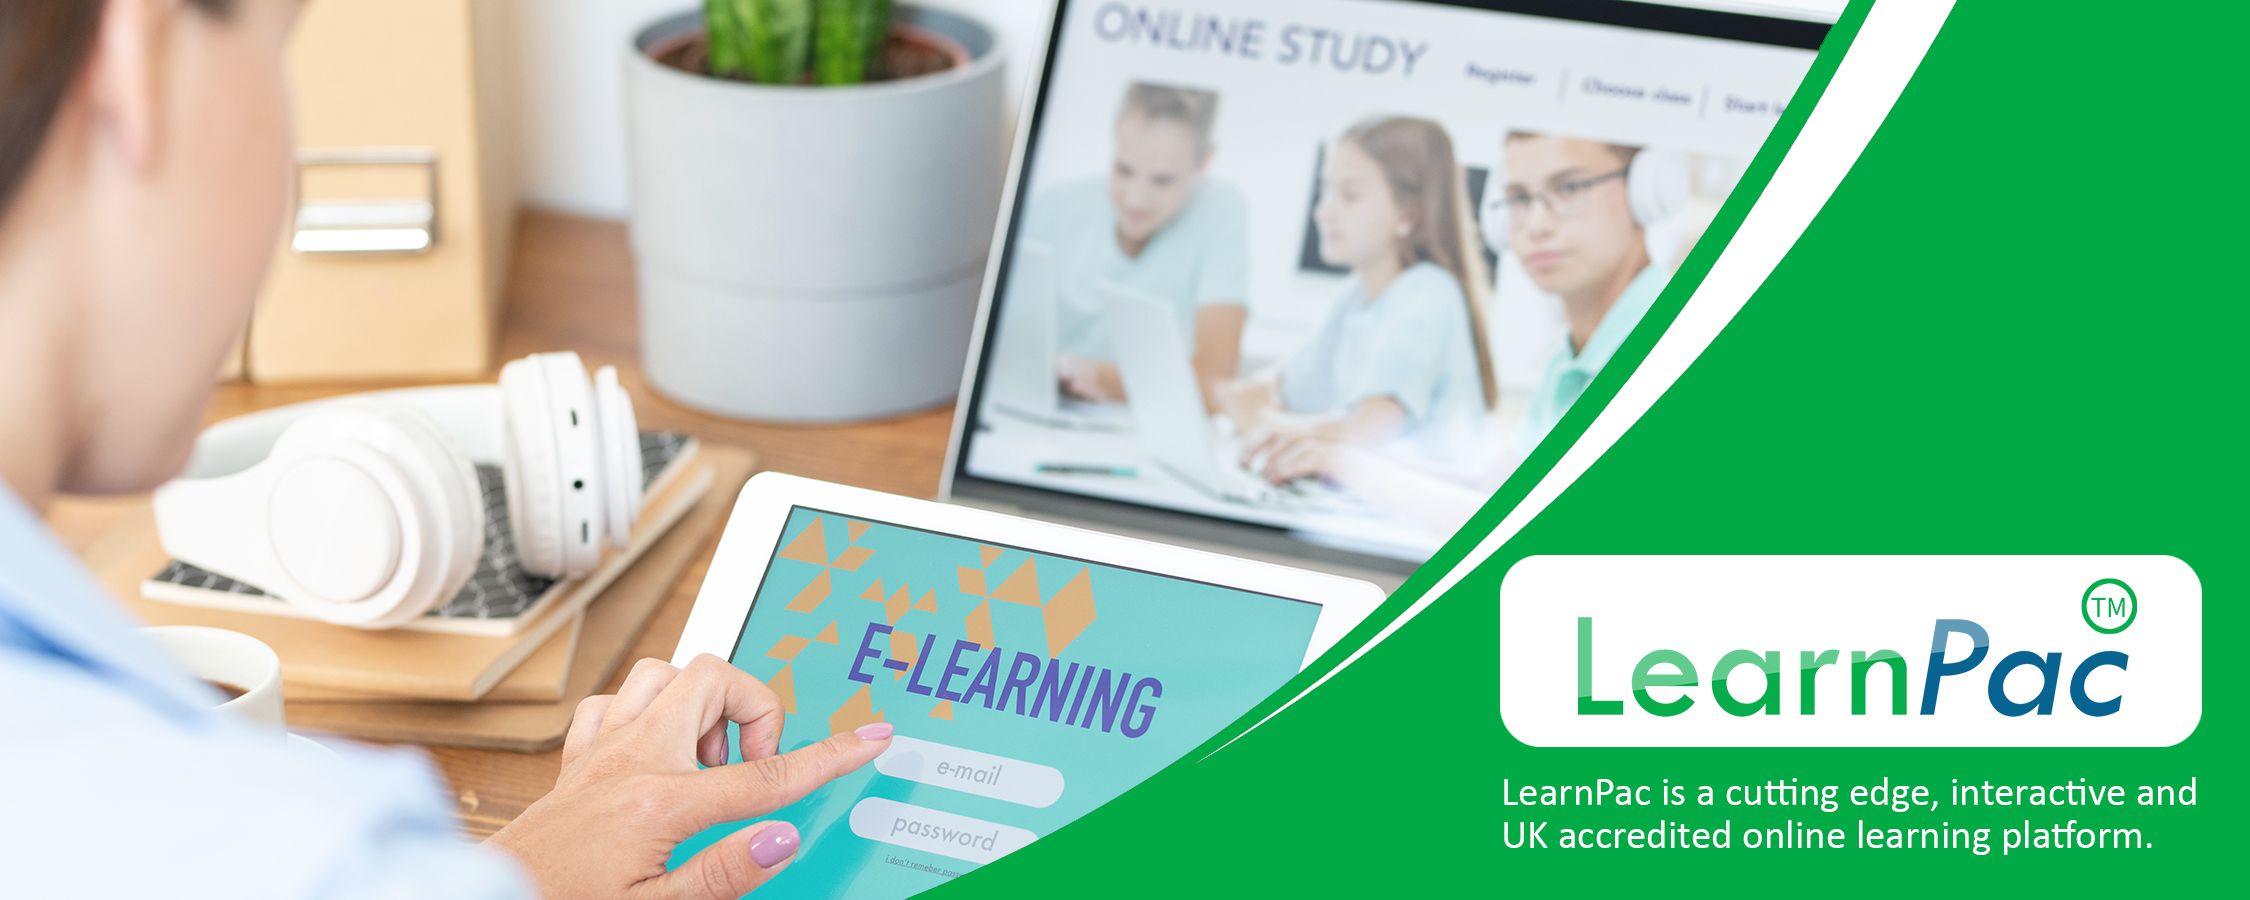 Entrepreneurship Training - Online Learning Courses - E-Learning Courses - LearnPac Systems UK -